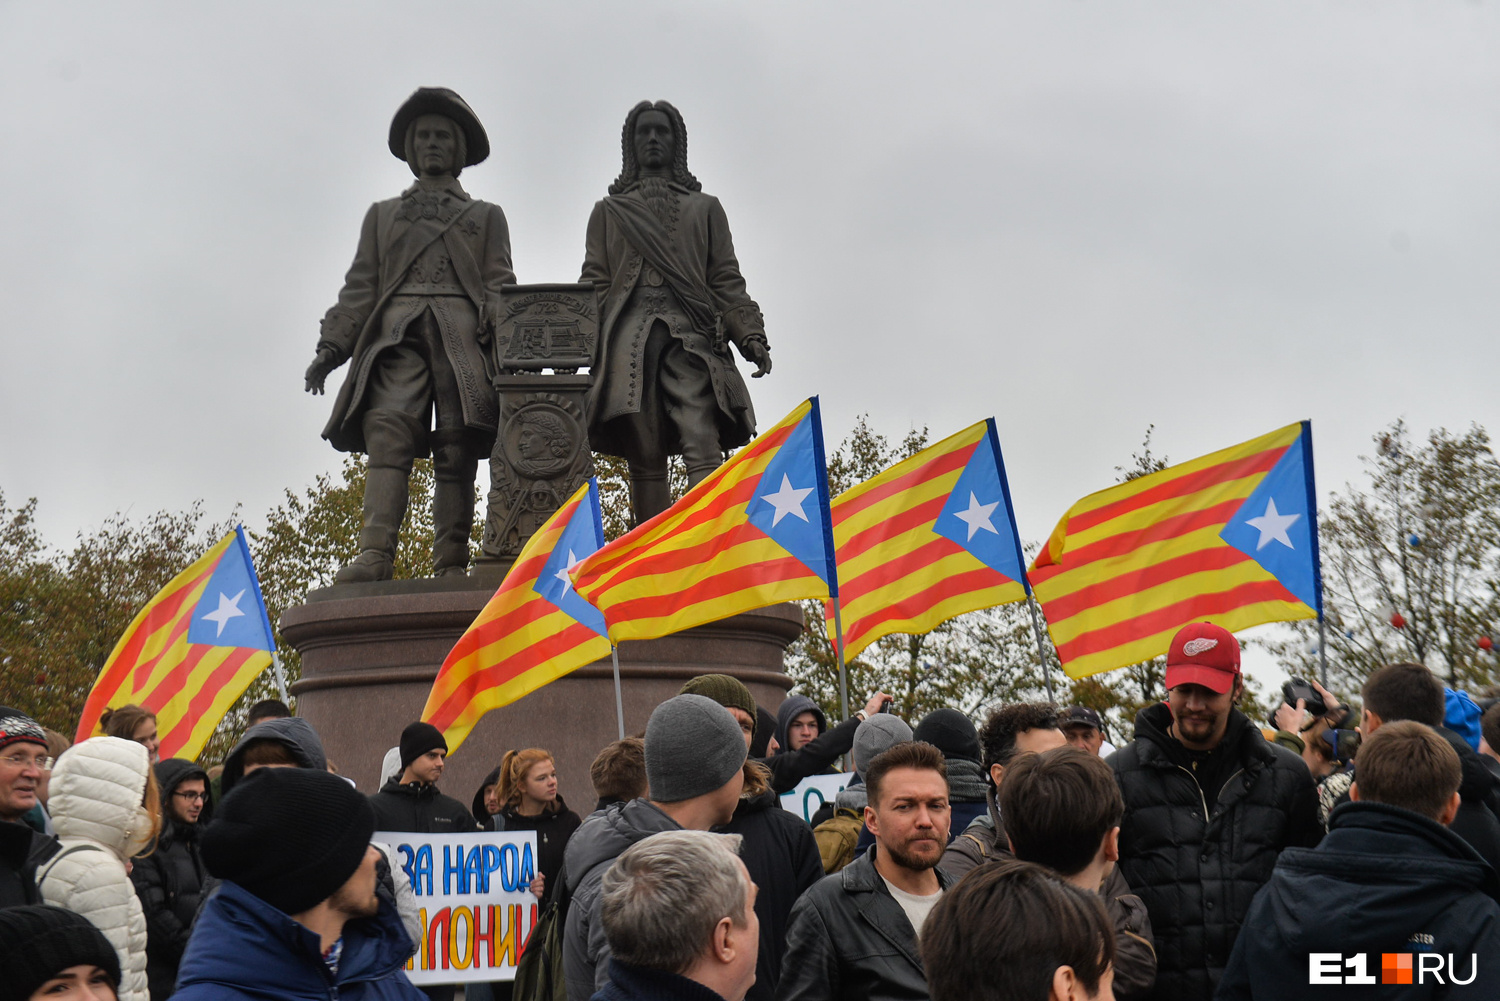 На площади Труда, которая находится перед памятником, часто проводят митинги